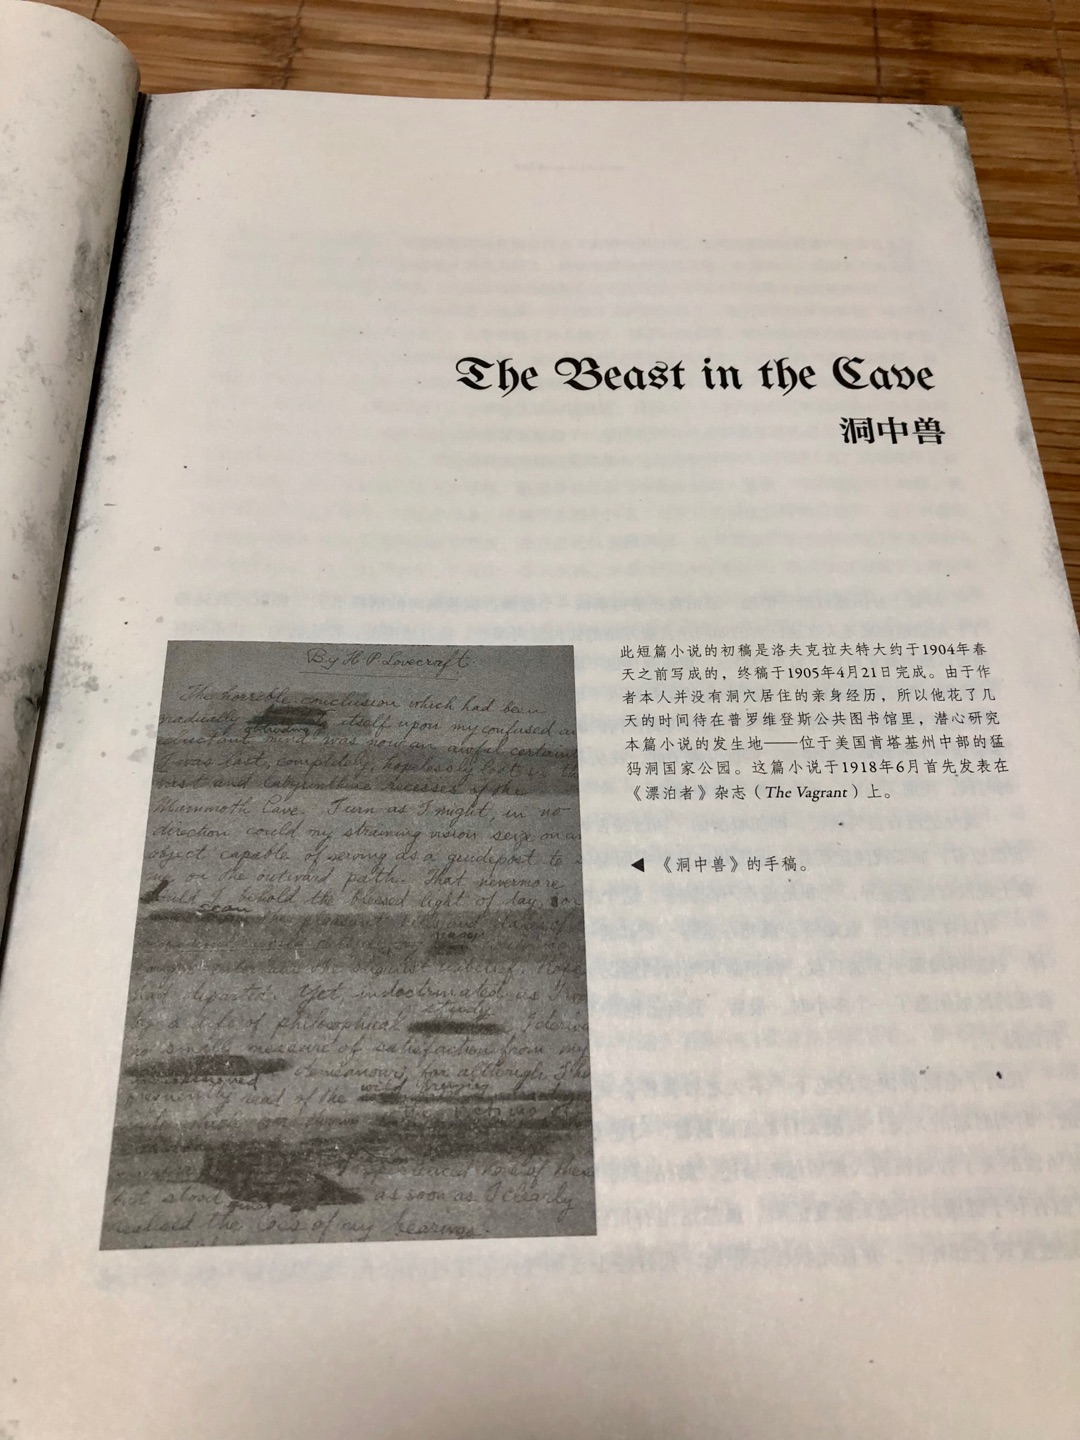 刚刚出版的洛夫克拉夫特小说集，比起之前在大学读的重庆大学出版社出版的《克苏鲁神话》，多了很多内容，甚至摘录了弃稿和爱手艺的部分手稿，长达1k页，书的大小可以看配图自行和x1x与ps4 pro对比。有常年翻译克苏鲁神话相关内容的竹子等人的翻译和玖羽作序，粗看下来这本书值得购买，但要说不足的话，腰封和市面上其他书一样sb，还有刻意通过加污点做旧，效果并不是很好，由于不同的小说是不同的译者，所以翻译的水准参差不齐，单看《克苏鲁的呼唤》，这本的翻译就差了不少，过于平铺直白，附图有翻译对比。